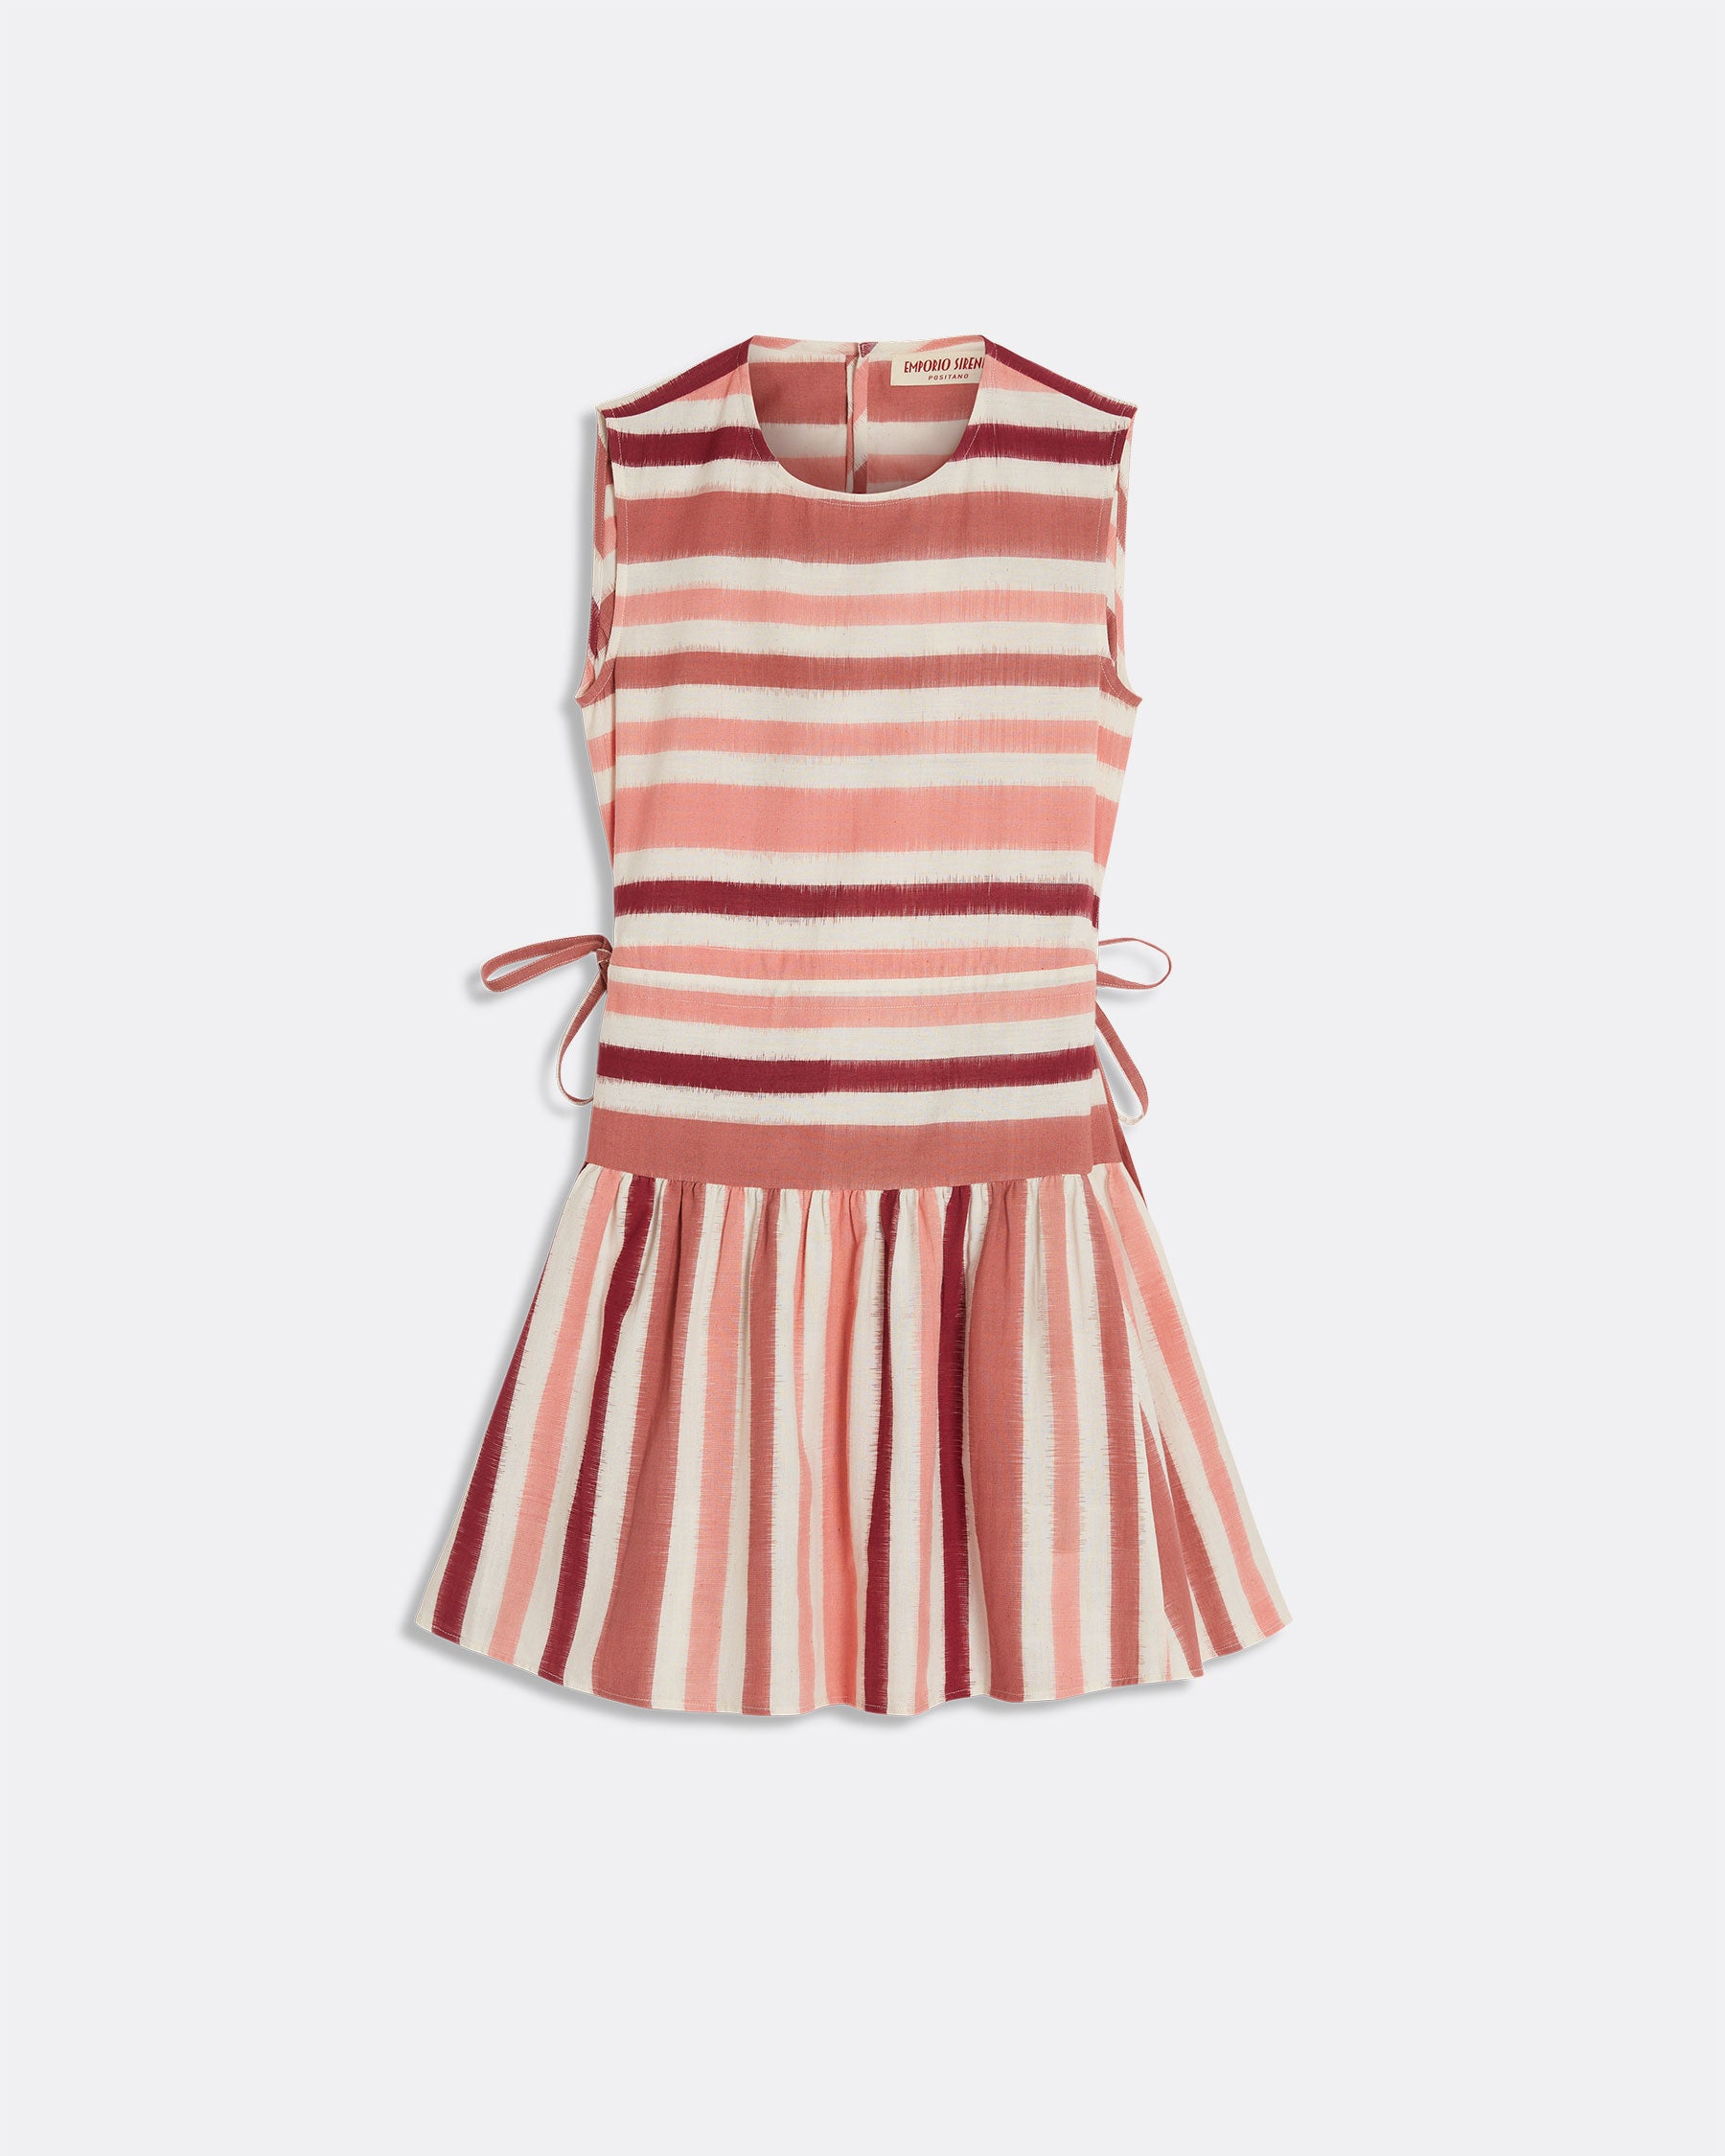 Loda Dress in French Stripes